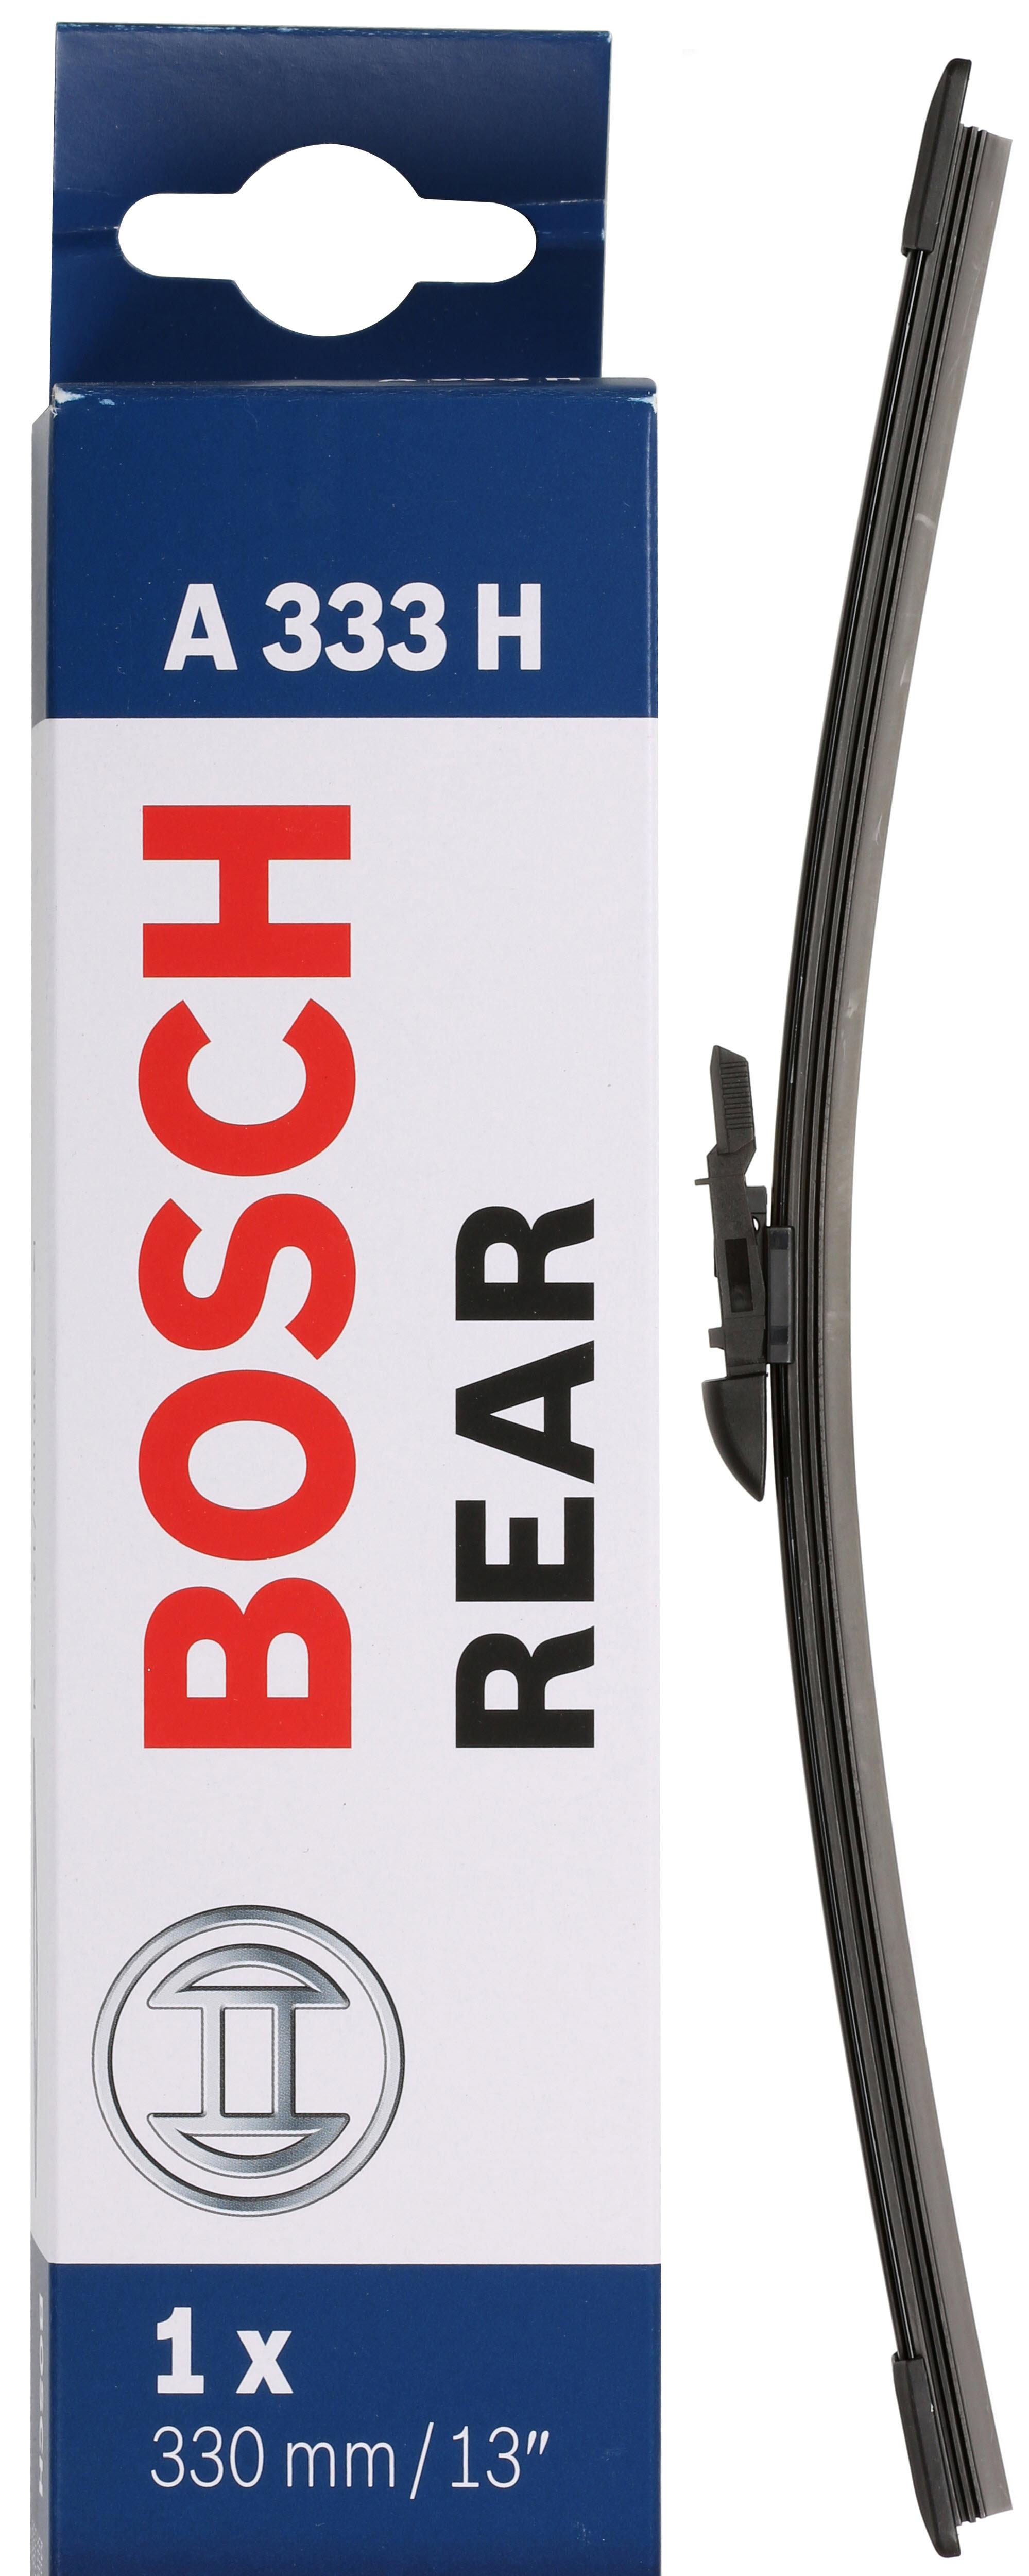 Bosch A333H Wiper Blade - Single